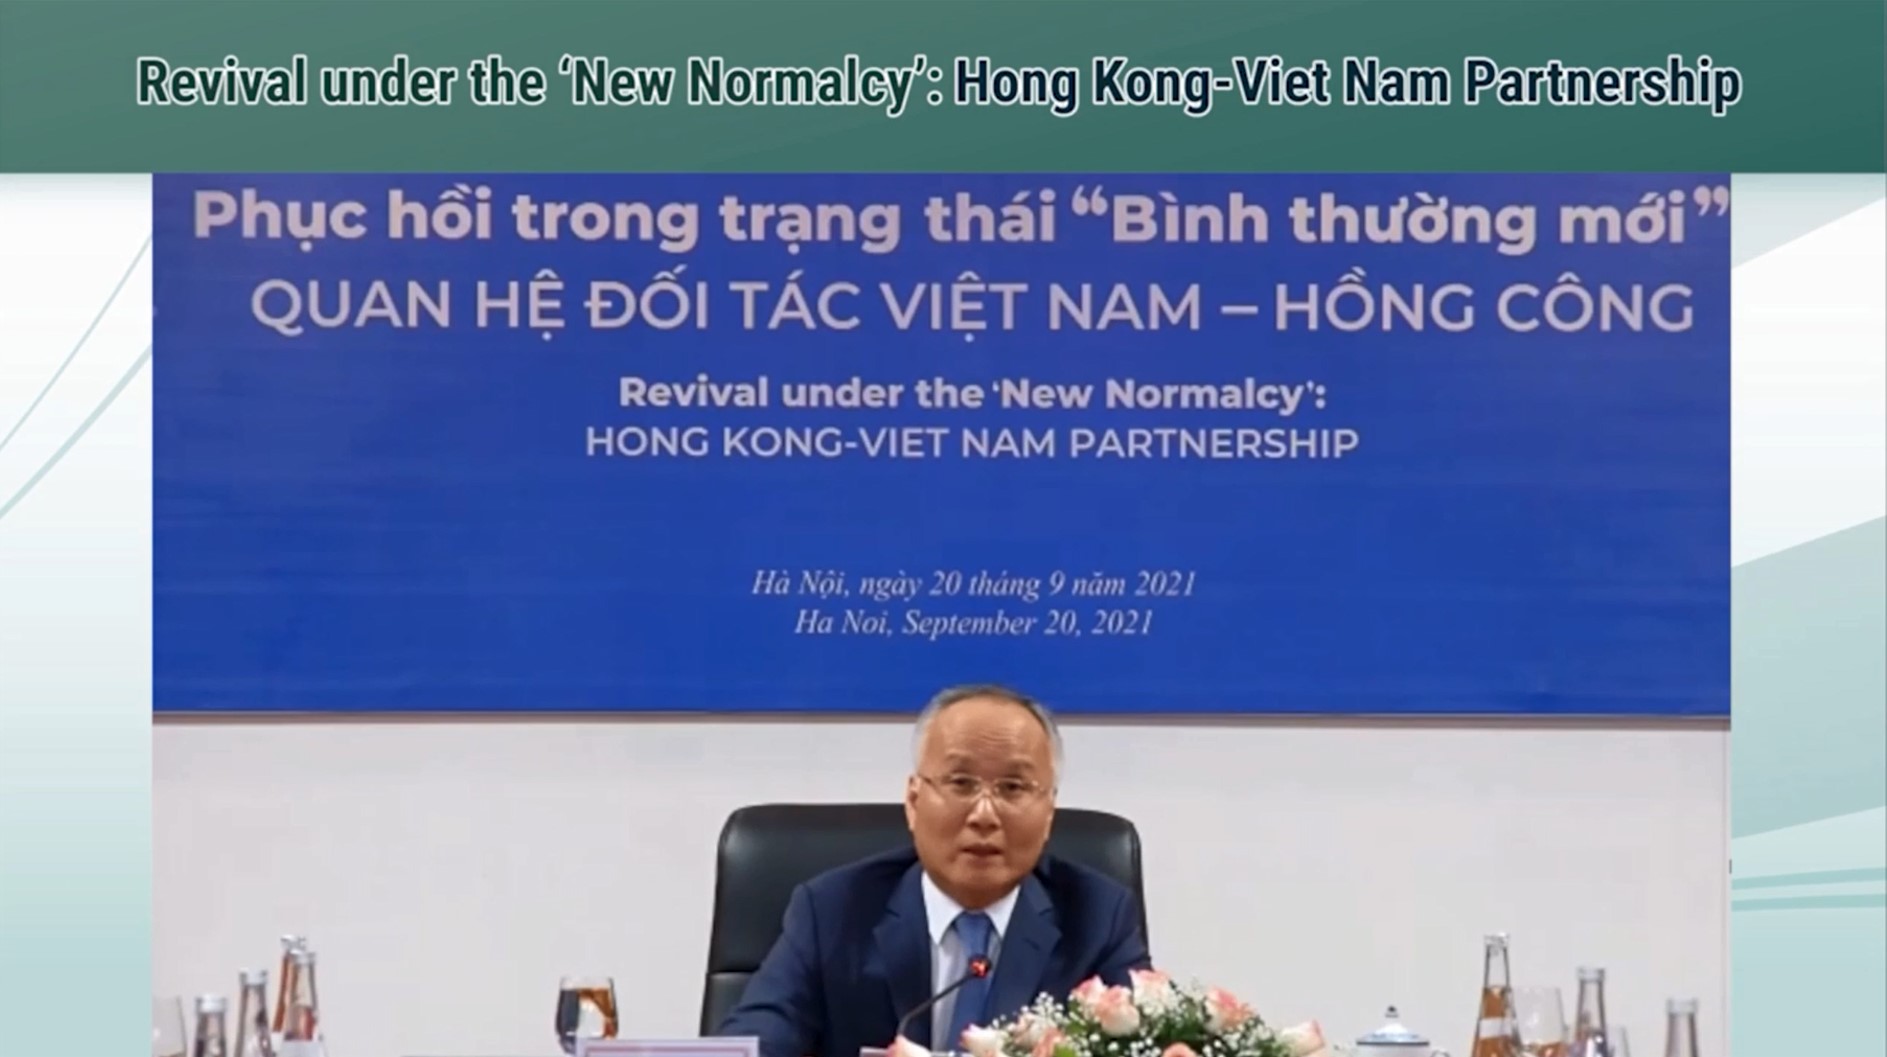 越南工業與貿易部副部長陳國慶在研討會致辭。